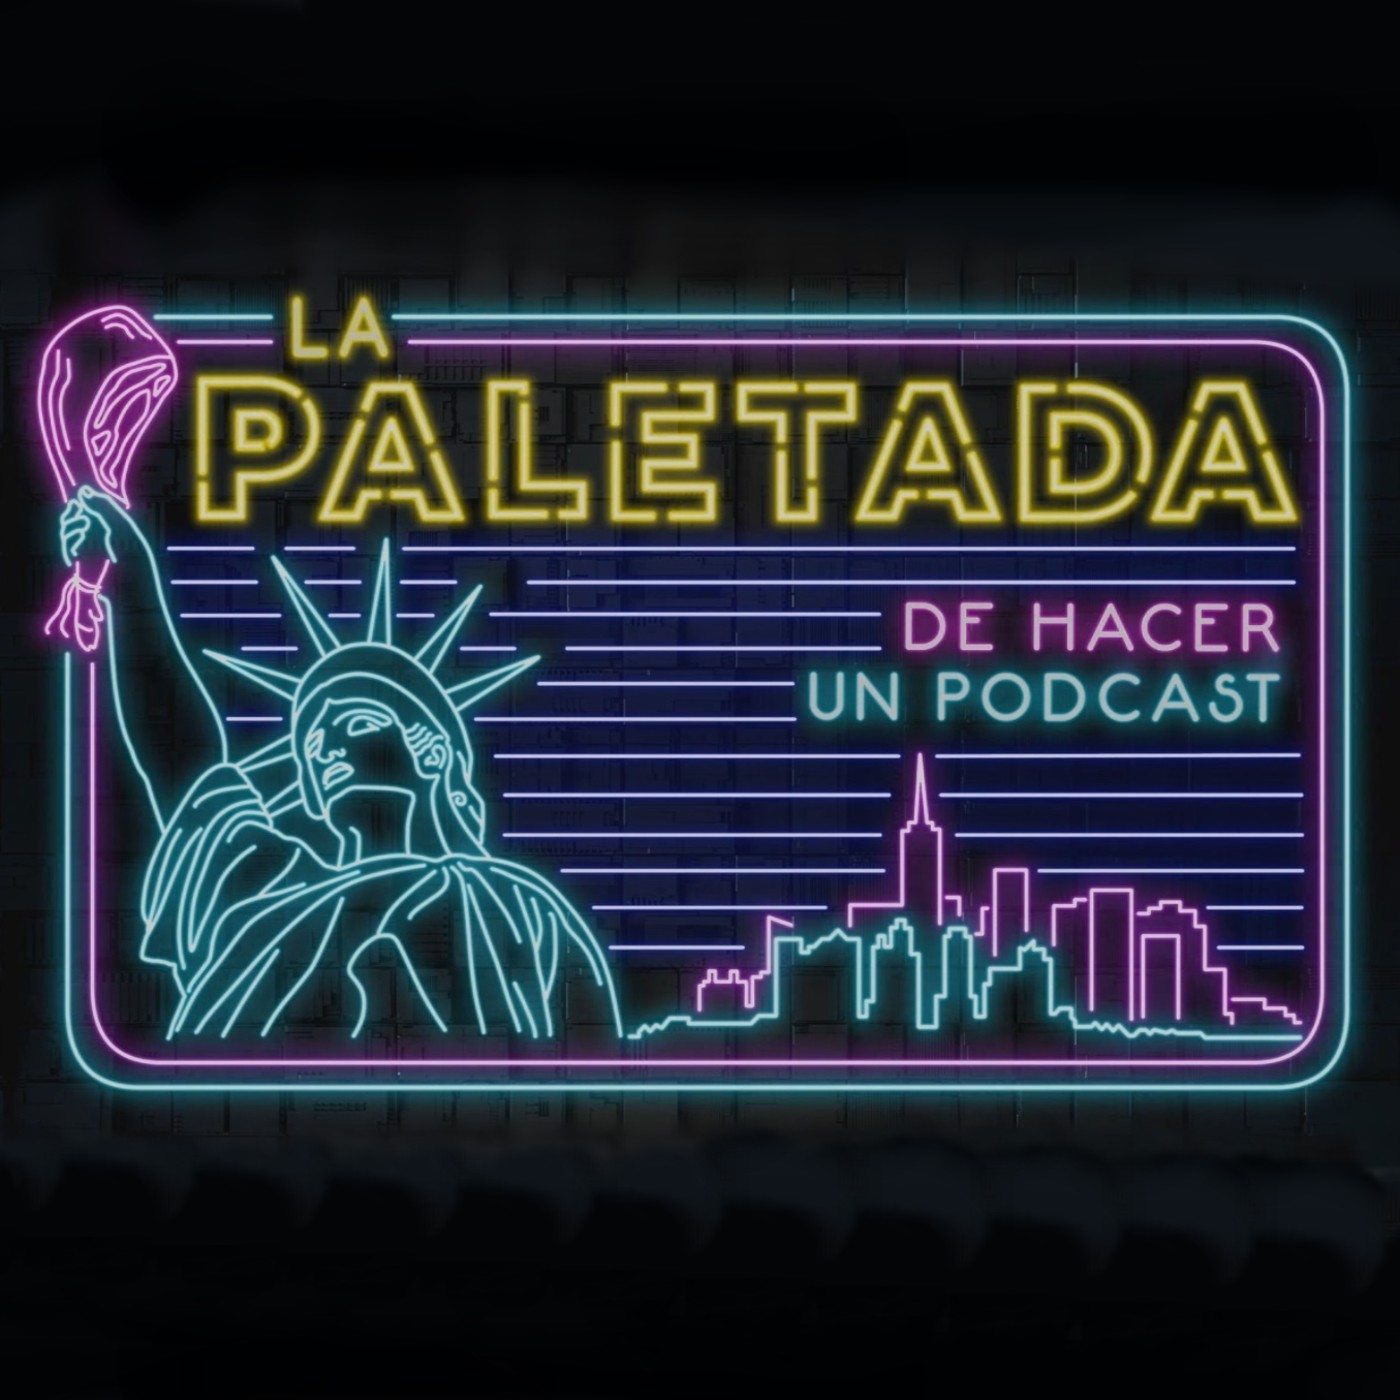 La Paletada de hacer ASCO Y PENA | La Paletada (de hacer un podcast)